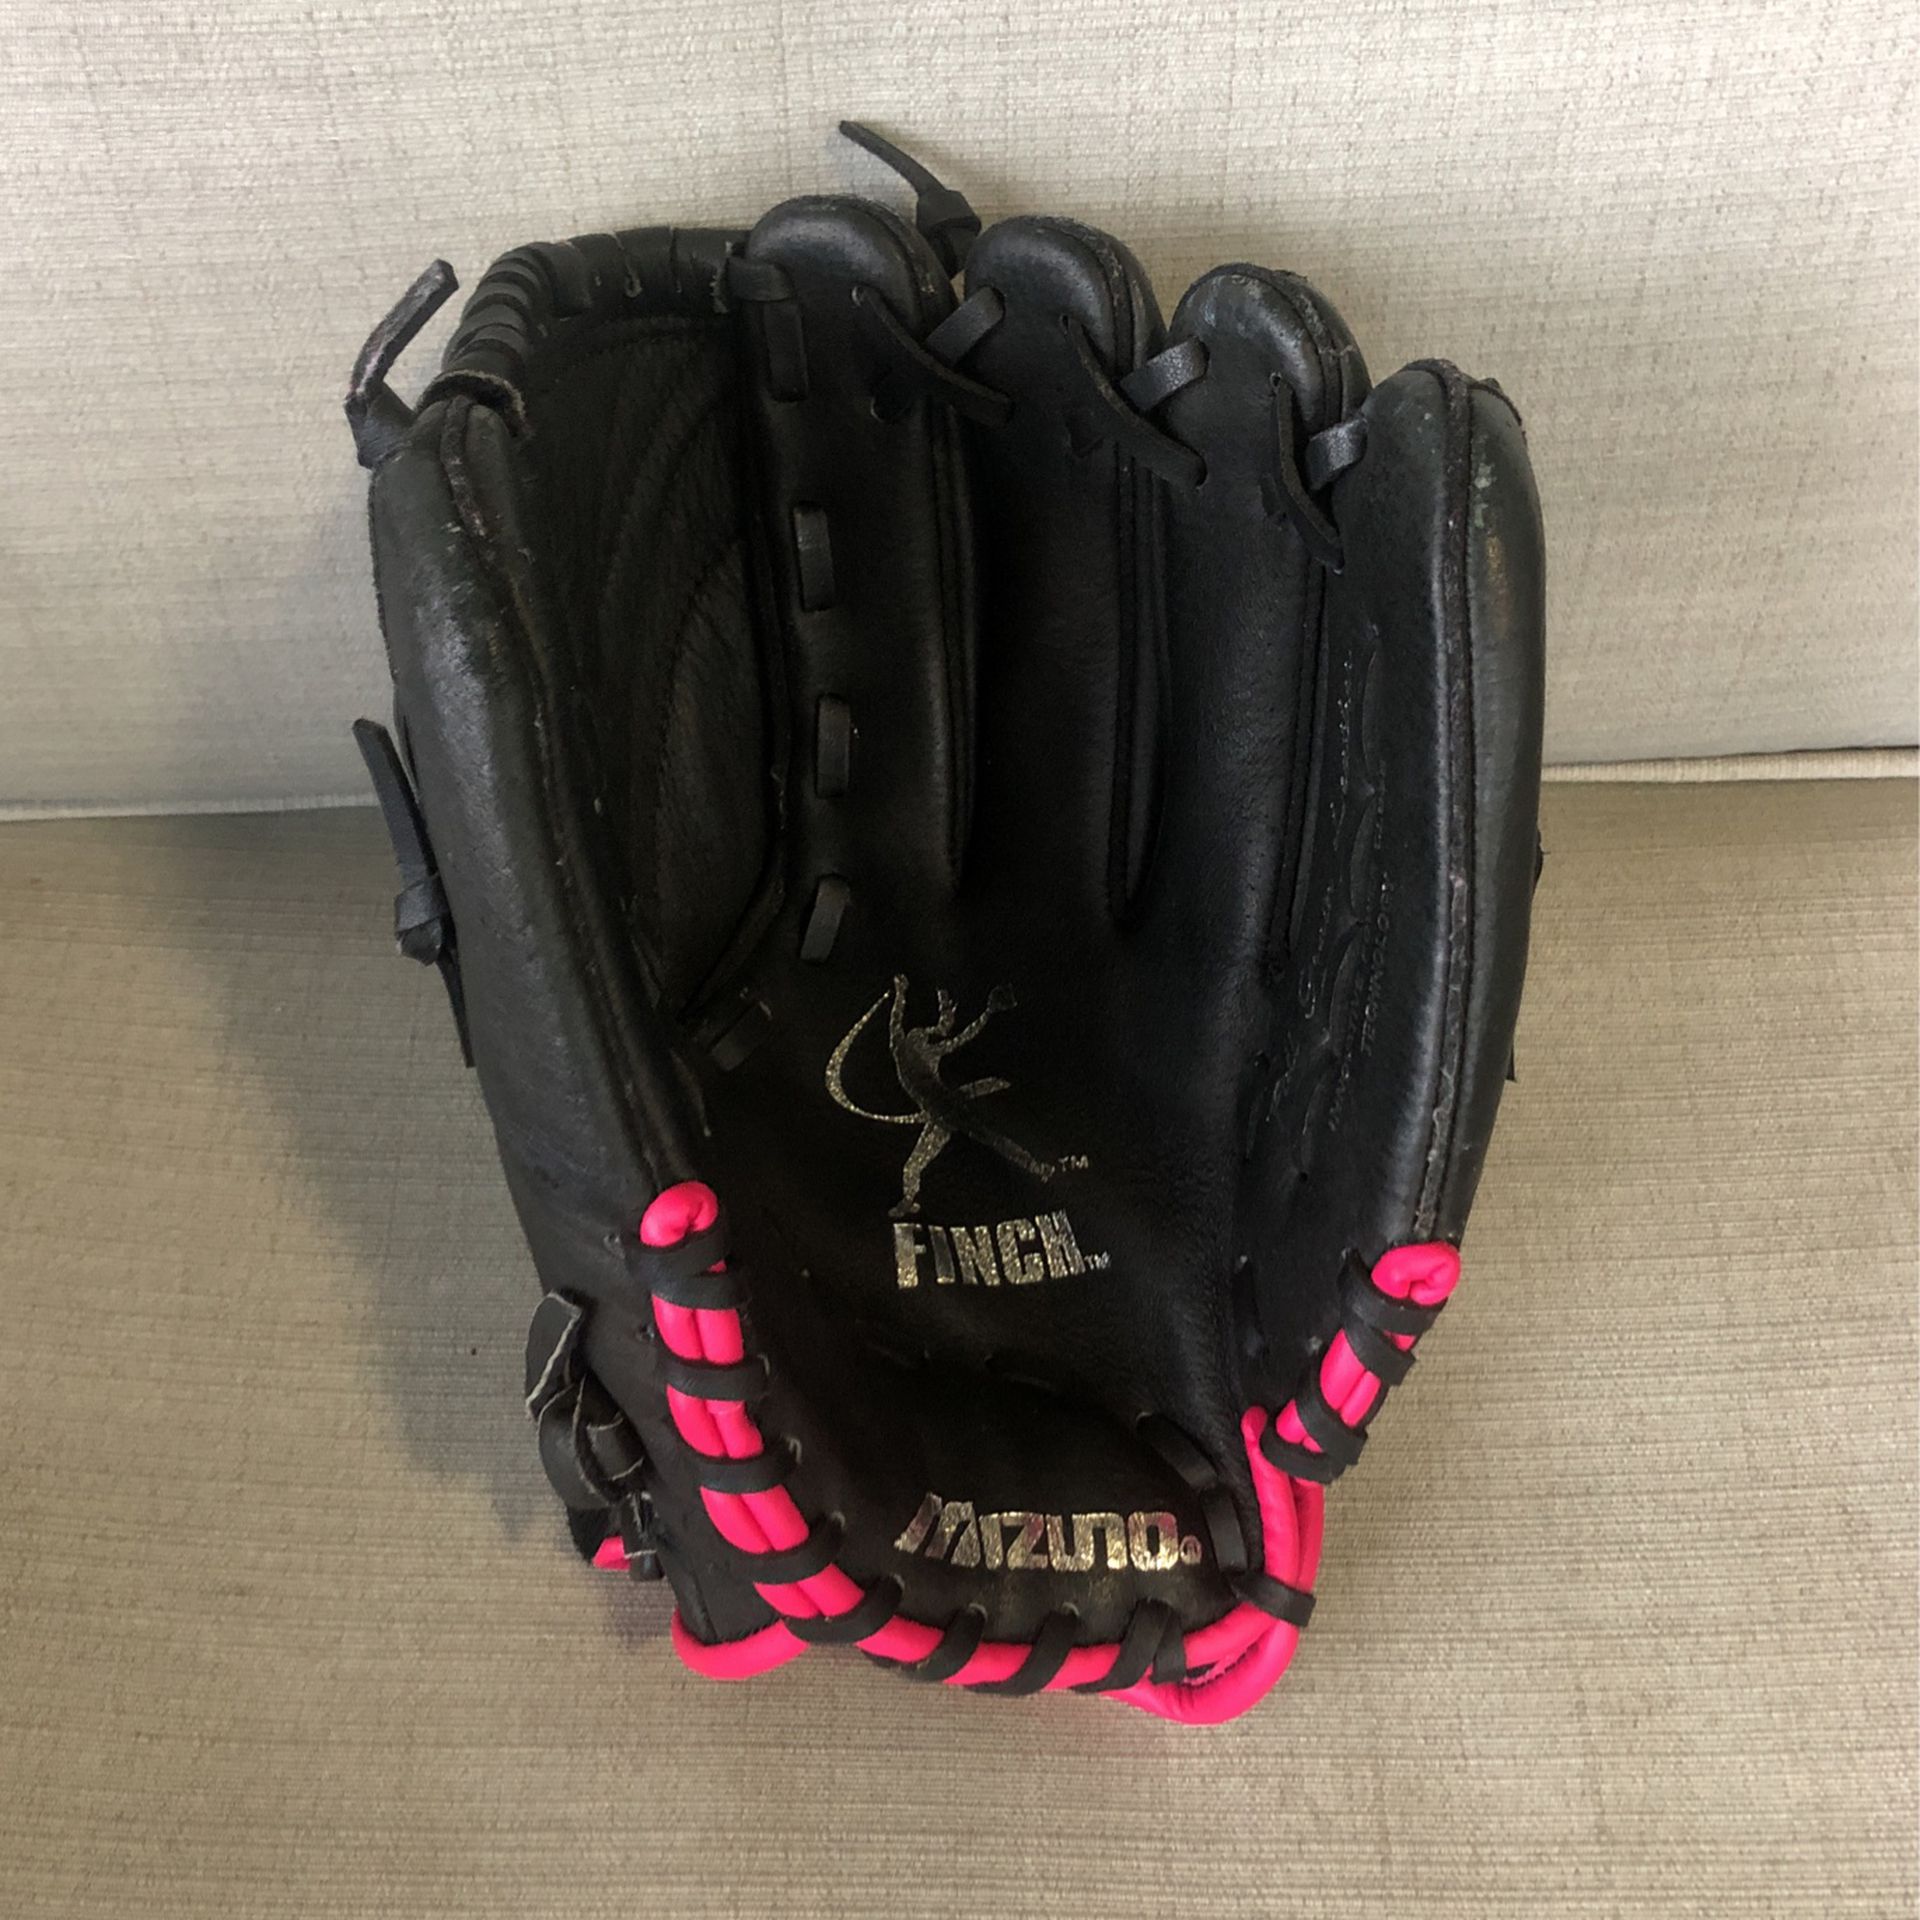 Girls 11” Mizuno Softball Glove (LH)